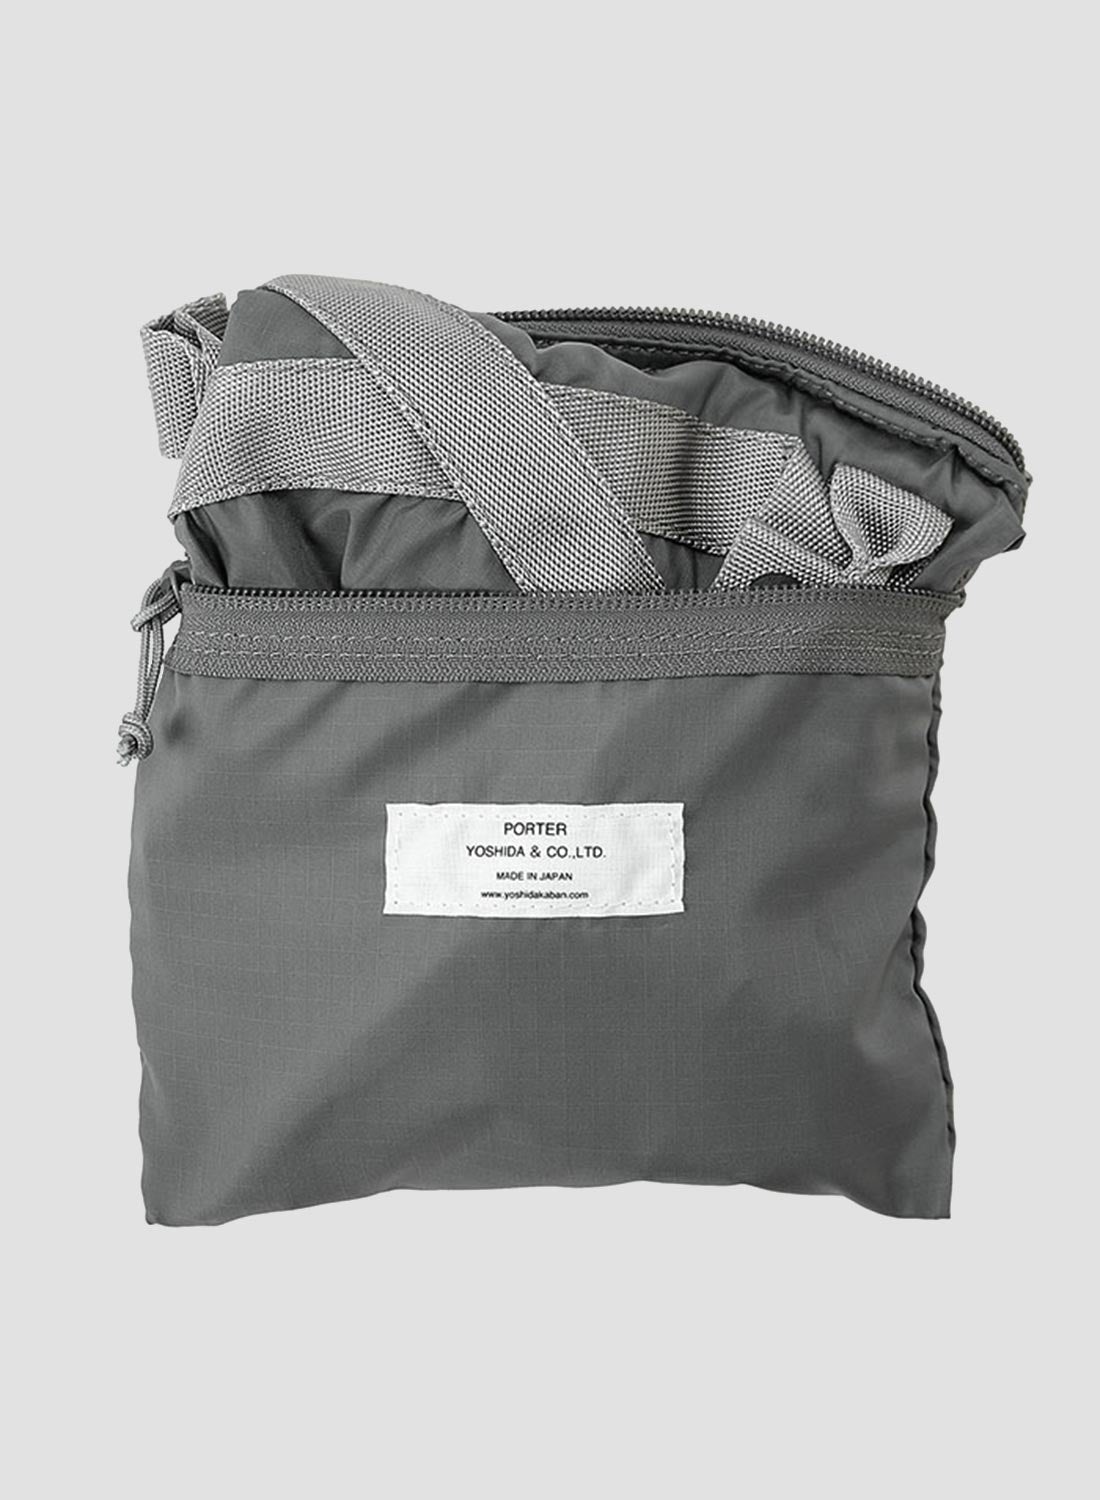 Porter-Yoshida & Co Flex 2-Way Tote Bag in Grey - 2